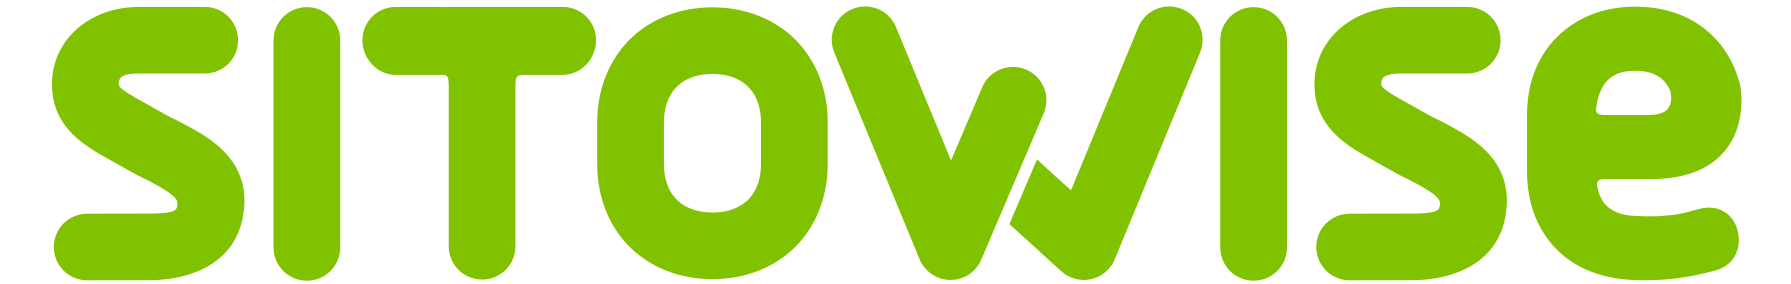 Sitowise - talonrakennusalan moniosaaja - logo